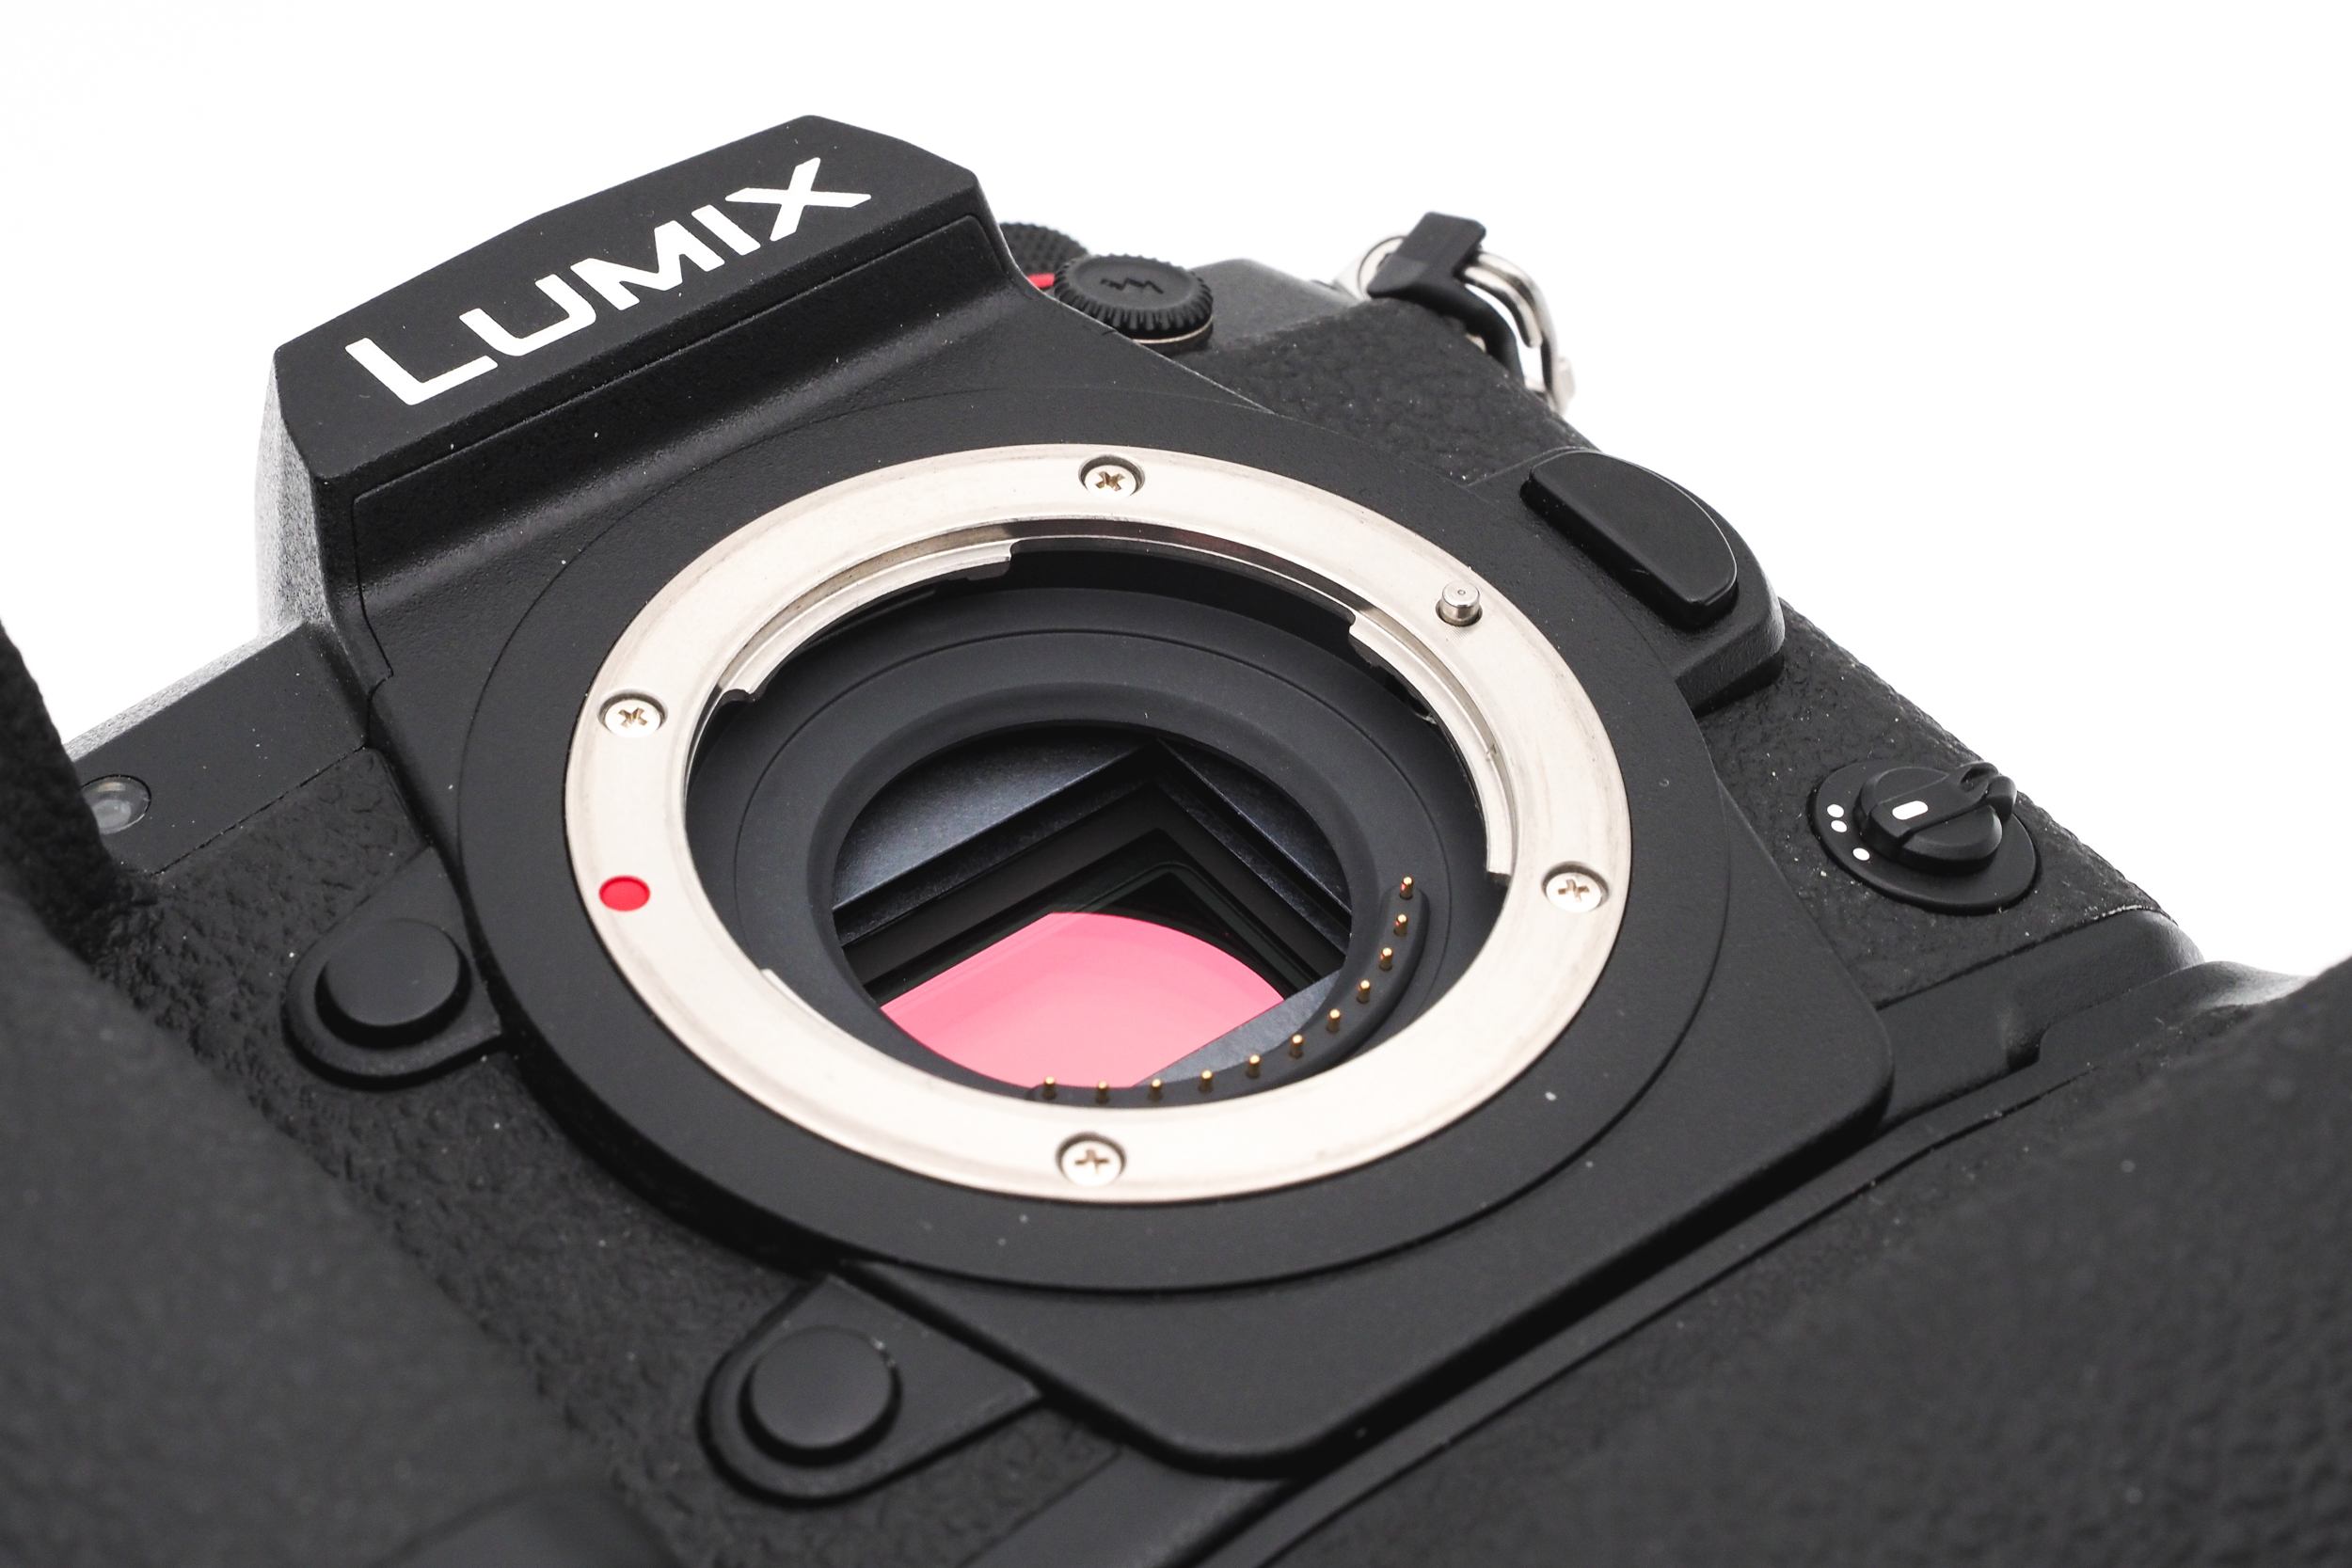 Lumix G9 + DMW-BGG9 Battery Grip